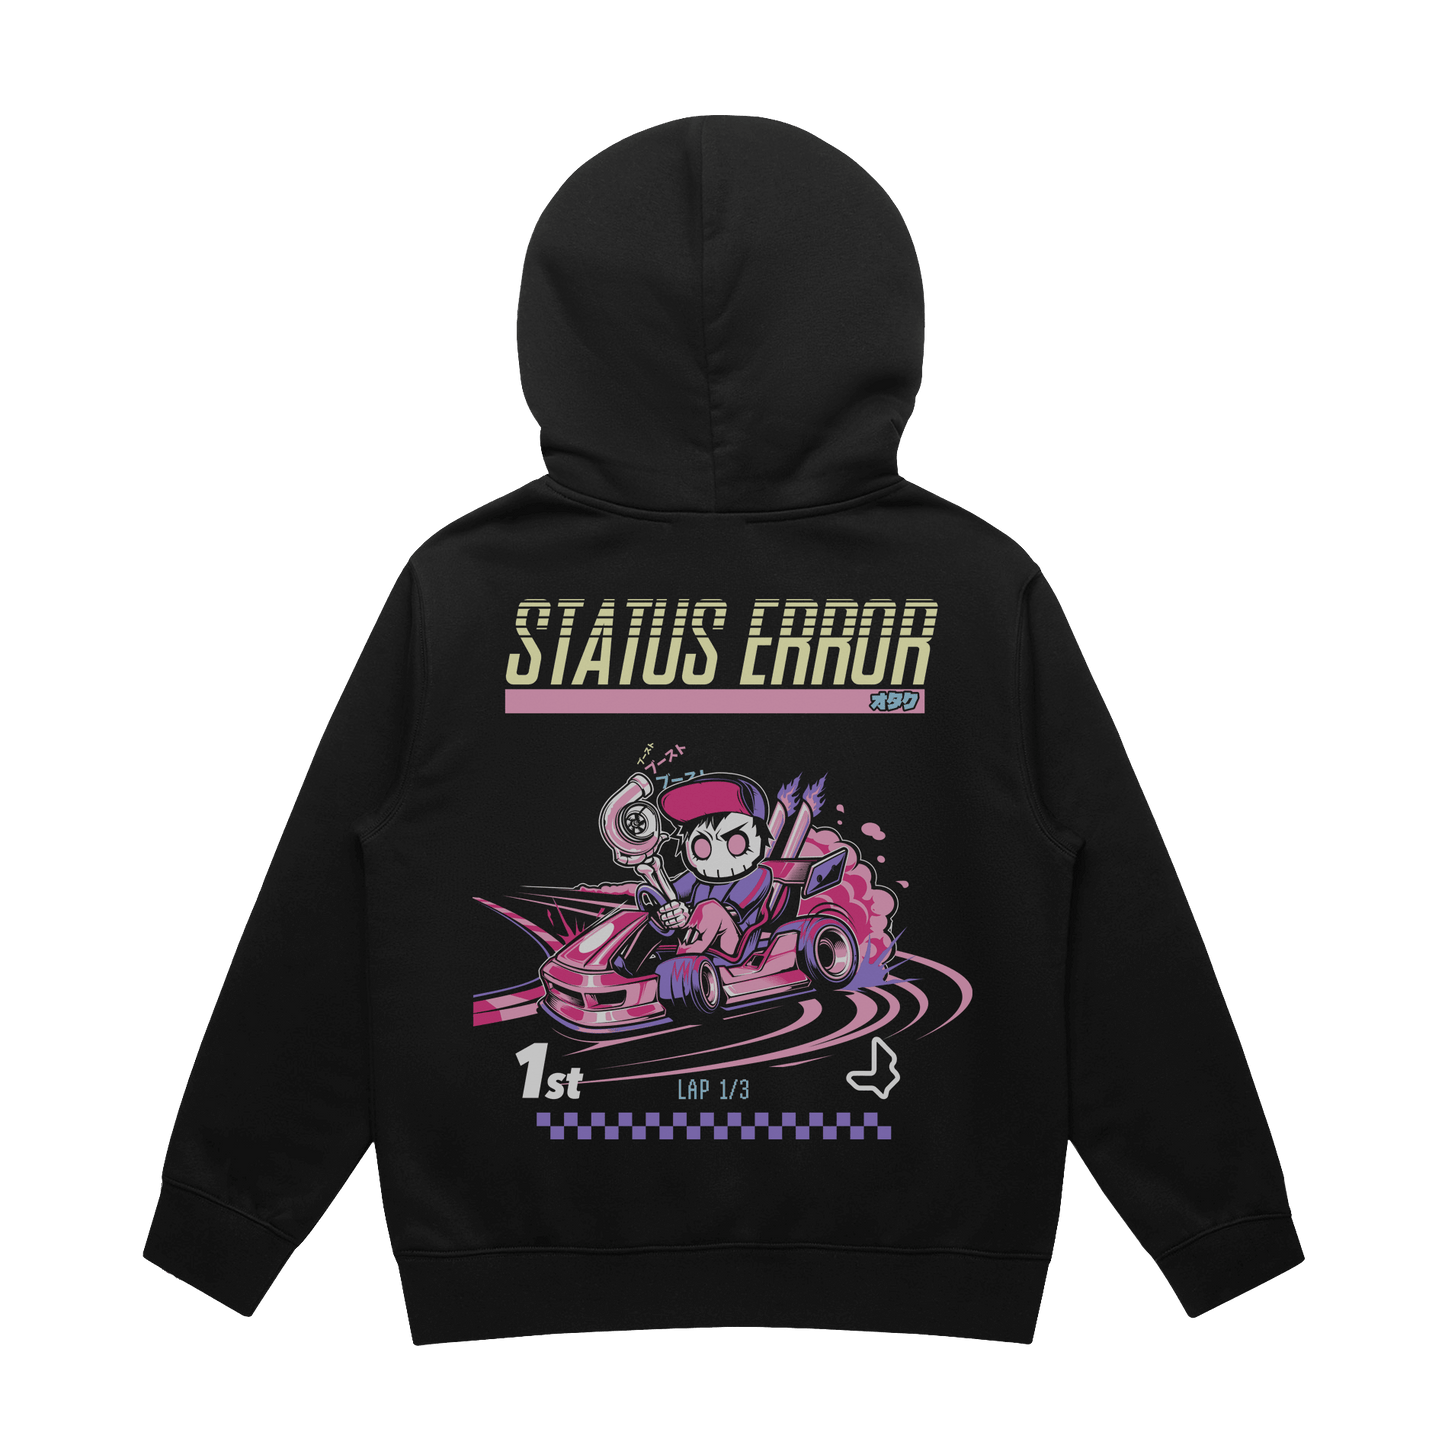 Status Error Super Drift Kart Hooded Sweater (Kids)